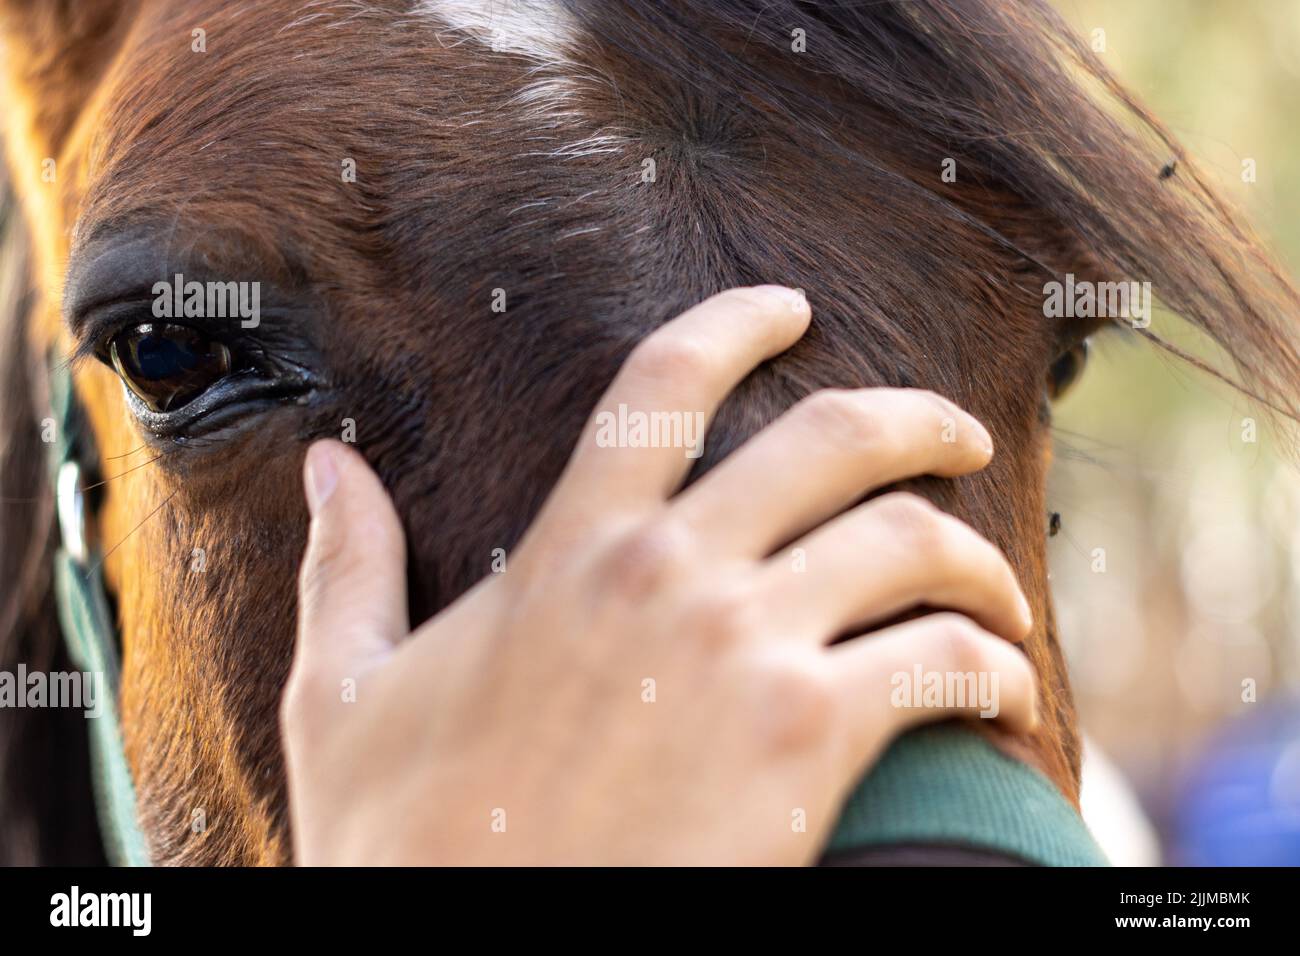 Eine Nahaufnahme einer menschlichen Hand, die den Kopf eines braunen Pferdes berührt Stockfoto